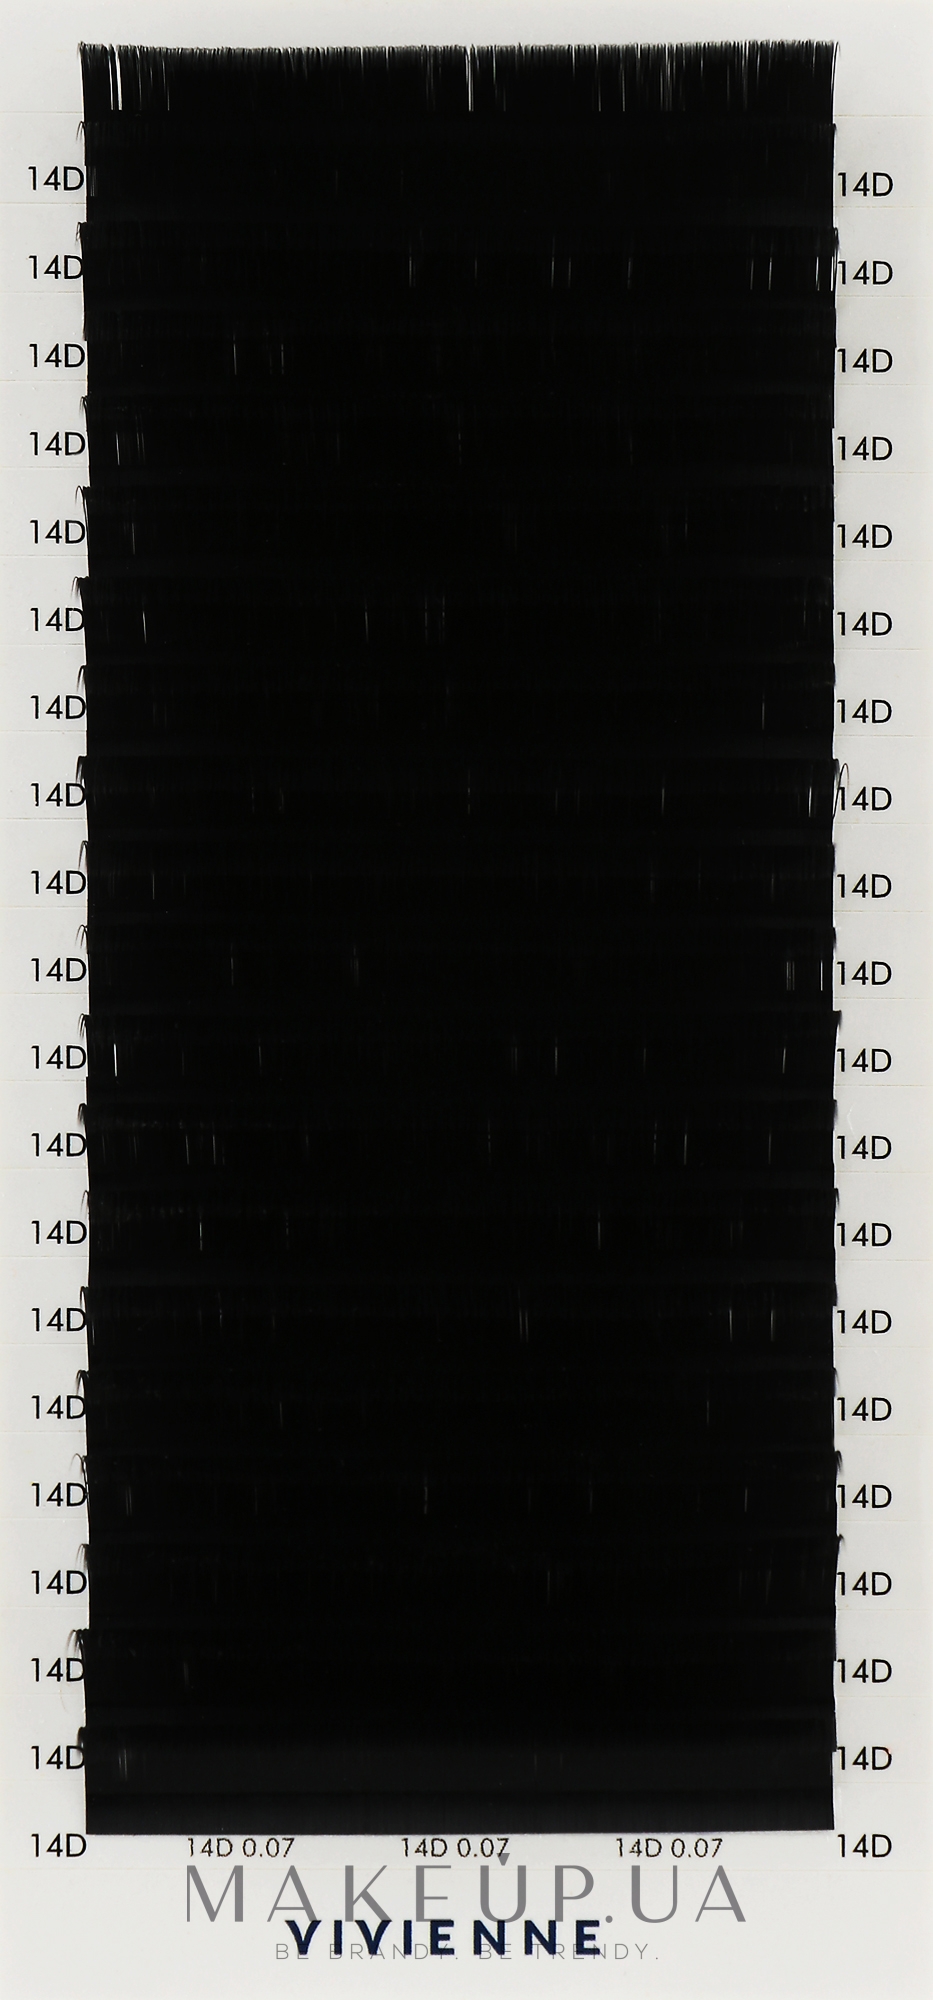 Накладные ресницы "Elite", черные, 20 линий (0,07, D, 14), эко упаковка - Vivienne — фото 1уп